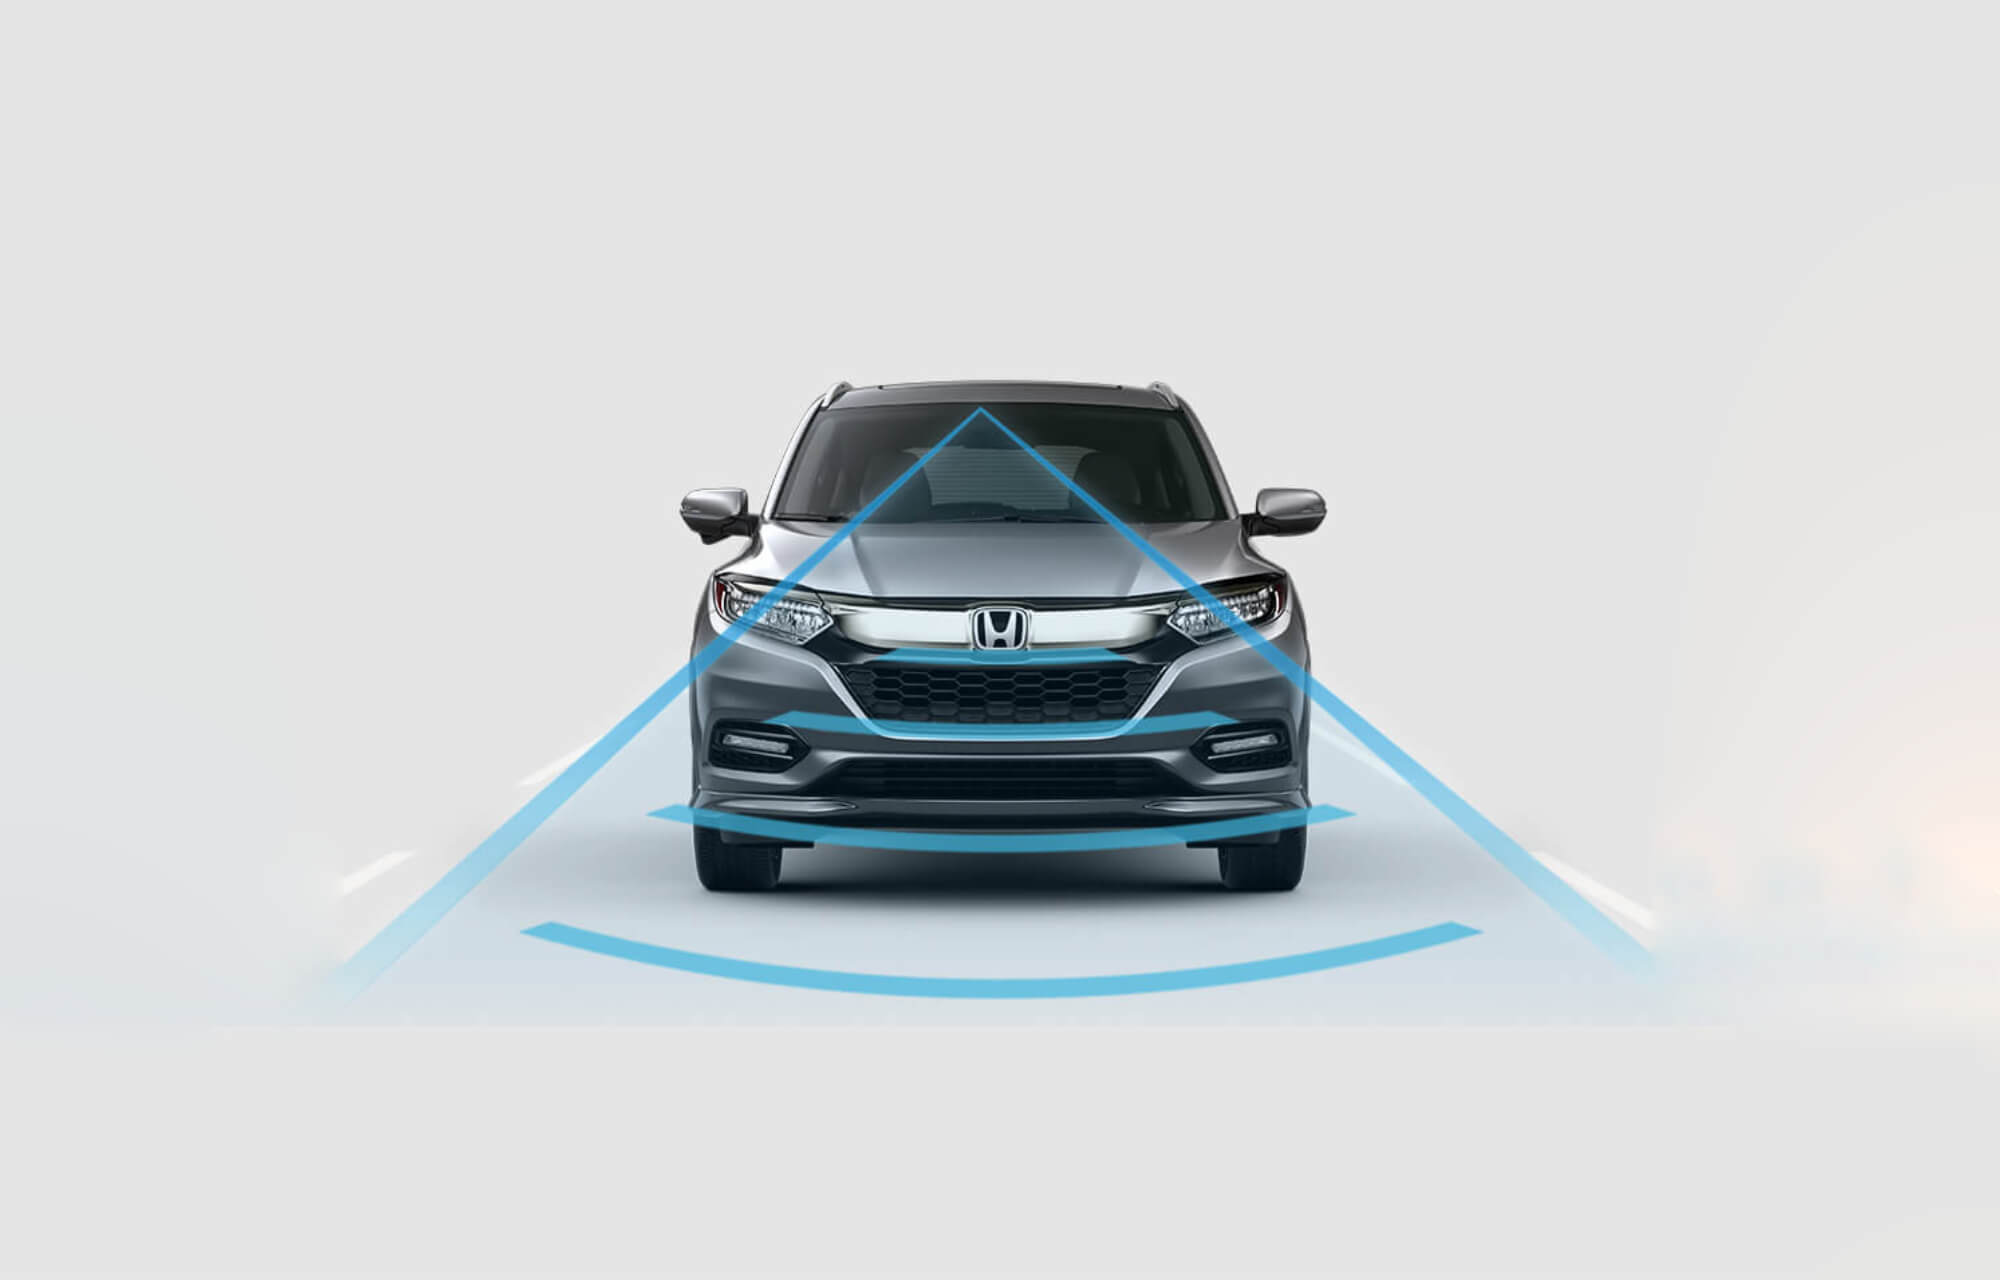 The all-new 2019 Honda HR-V